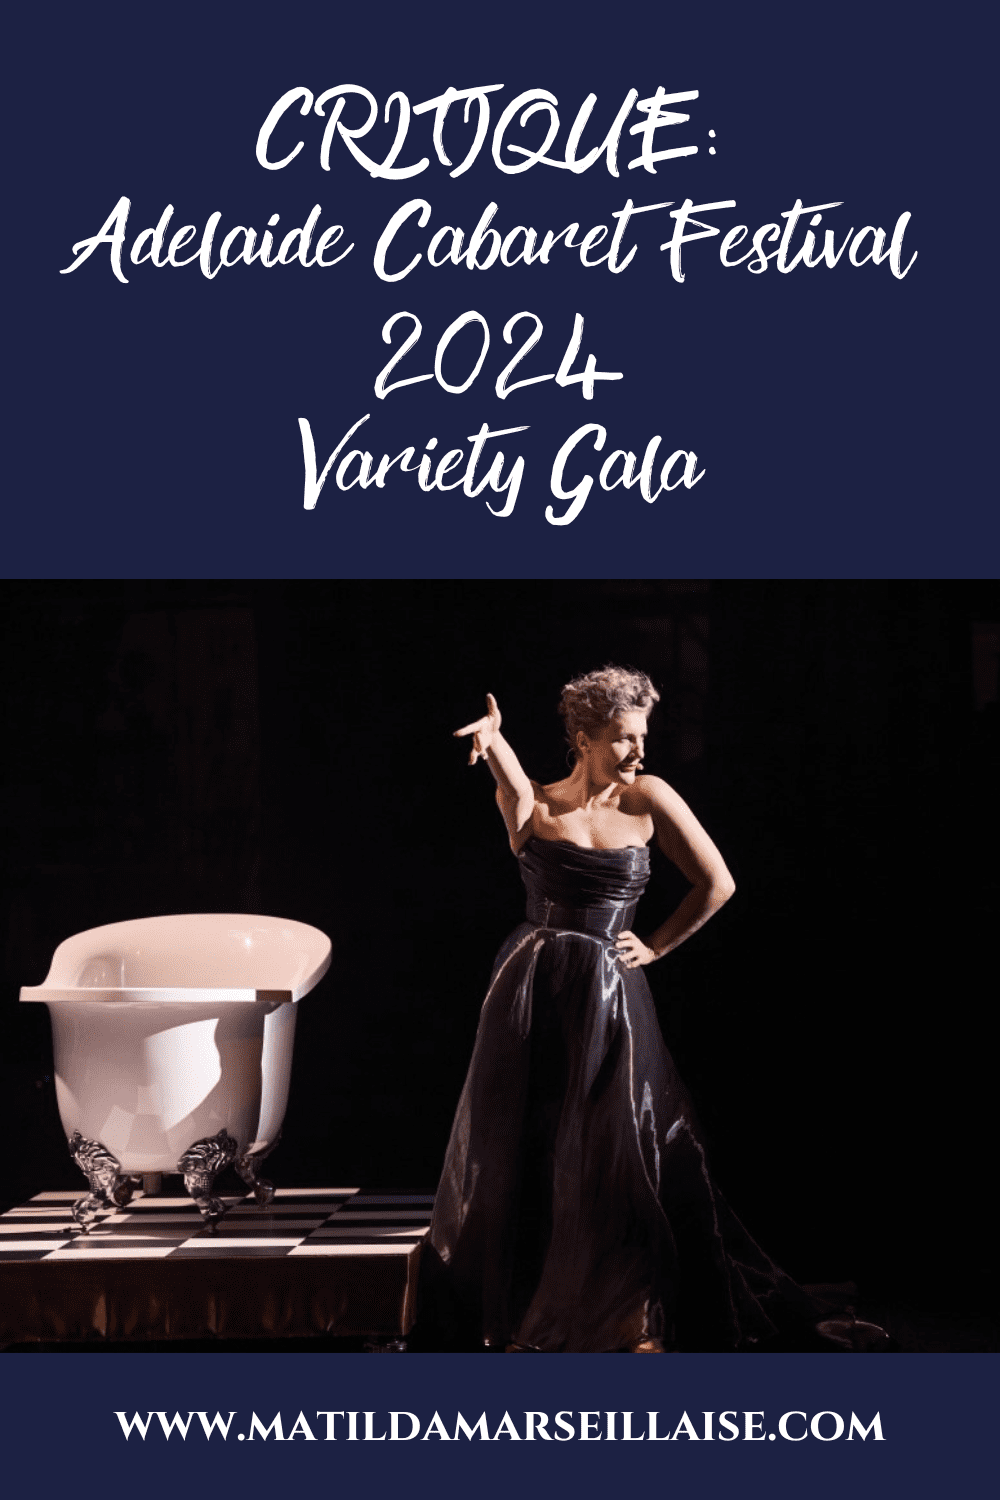 Le gala de variétés de l’Adelaide Cabaret Festival 2024 laisse le public sur sa faim, alors qu’une icône est couronnée